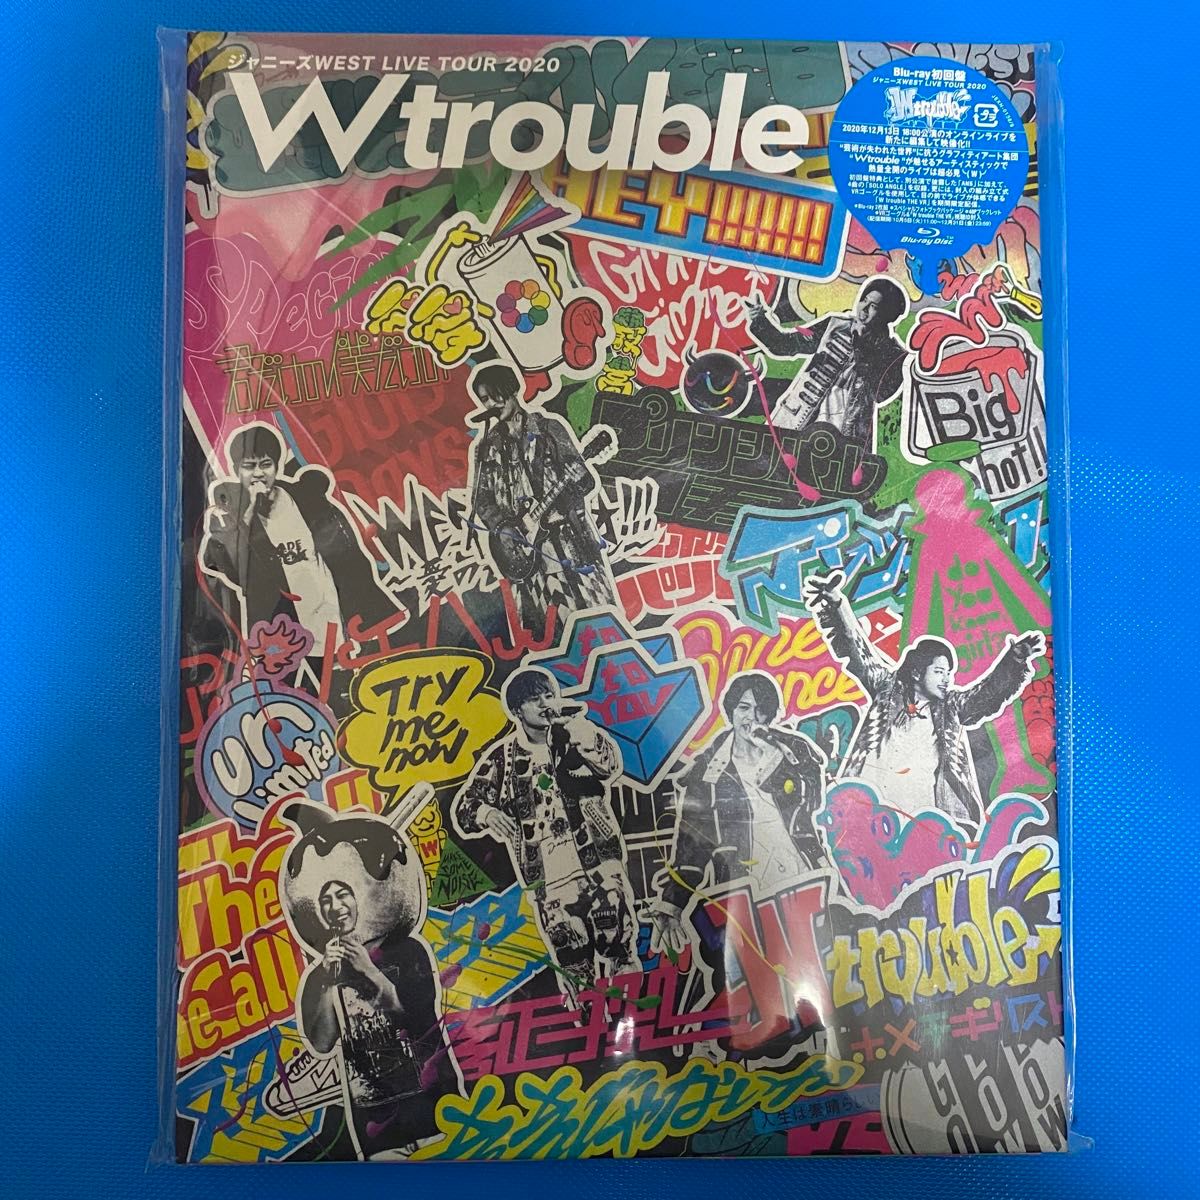 ジャニーズWEST LIVE TOUR 2020 W trouble〈初回盤・2枚組〉